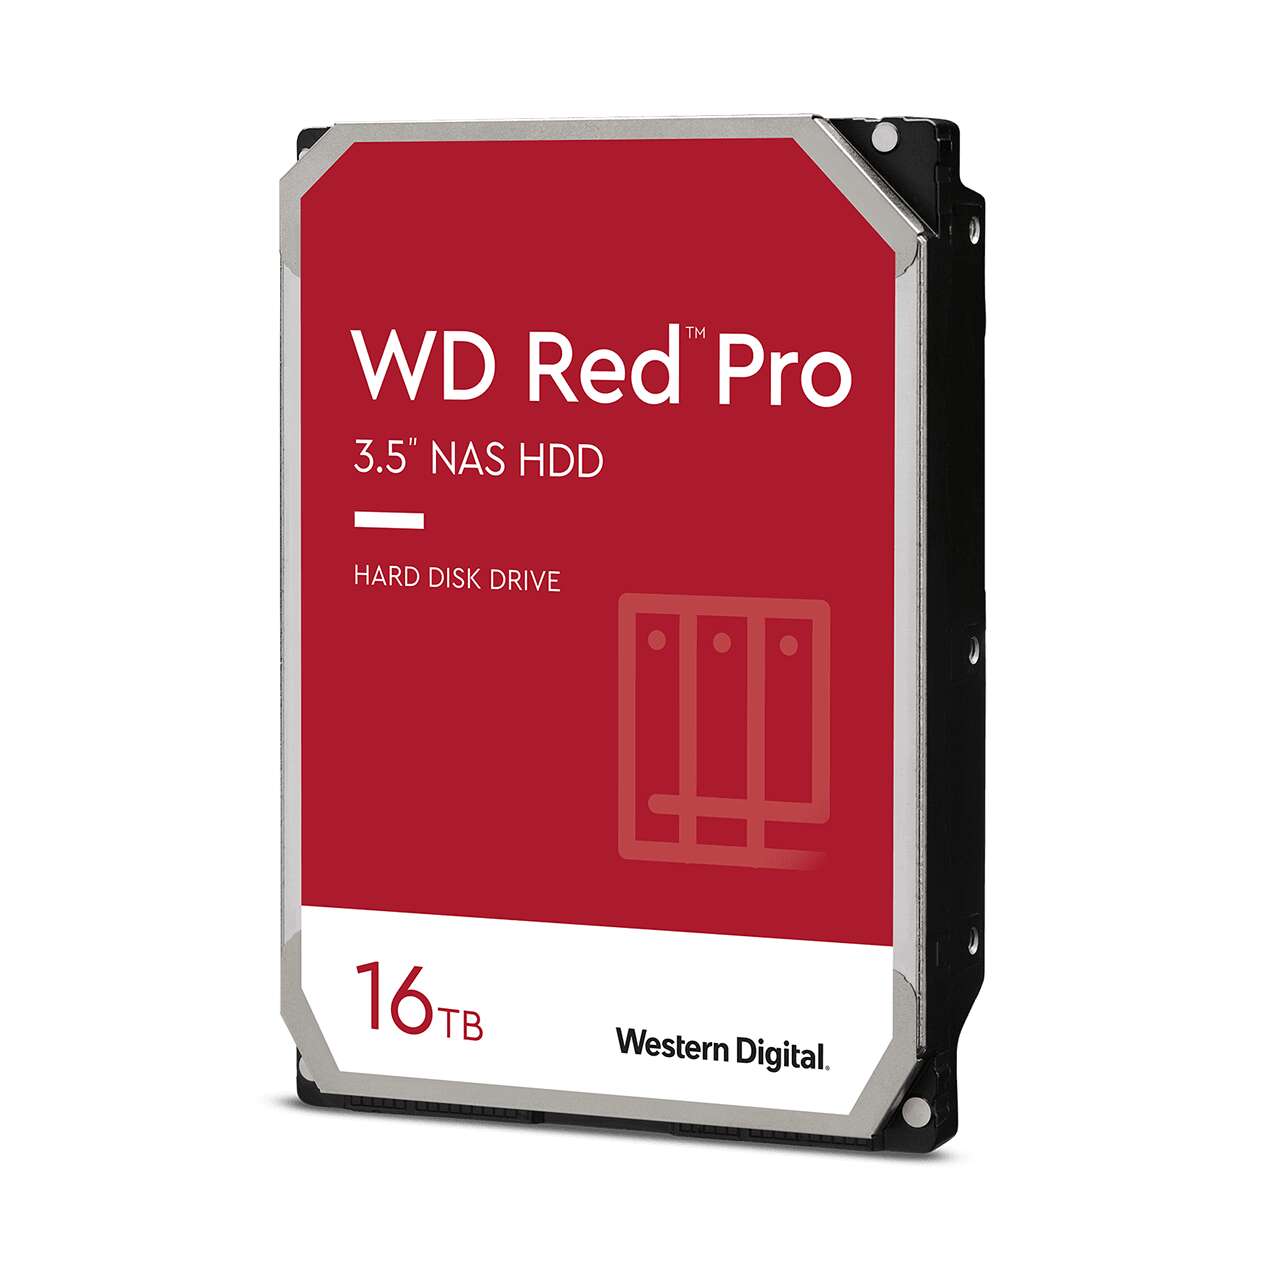 Western digital 16tb red pro sata3 3.5" nas hdd